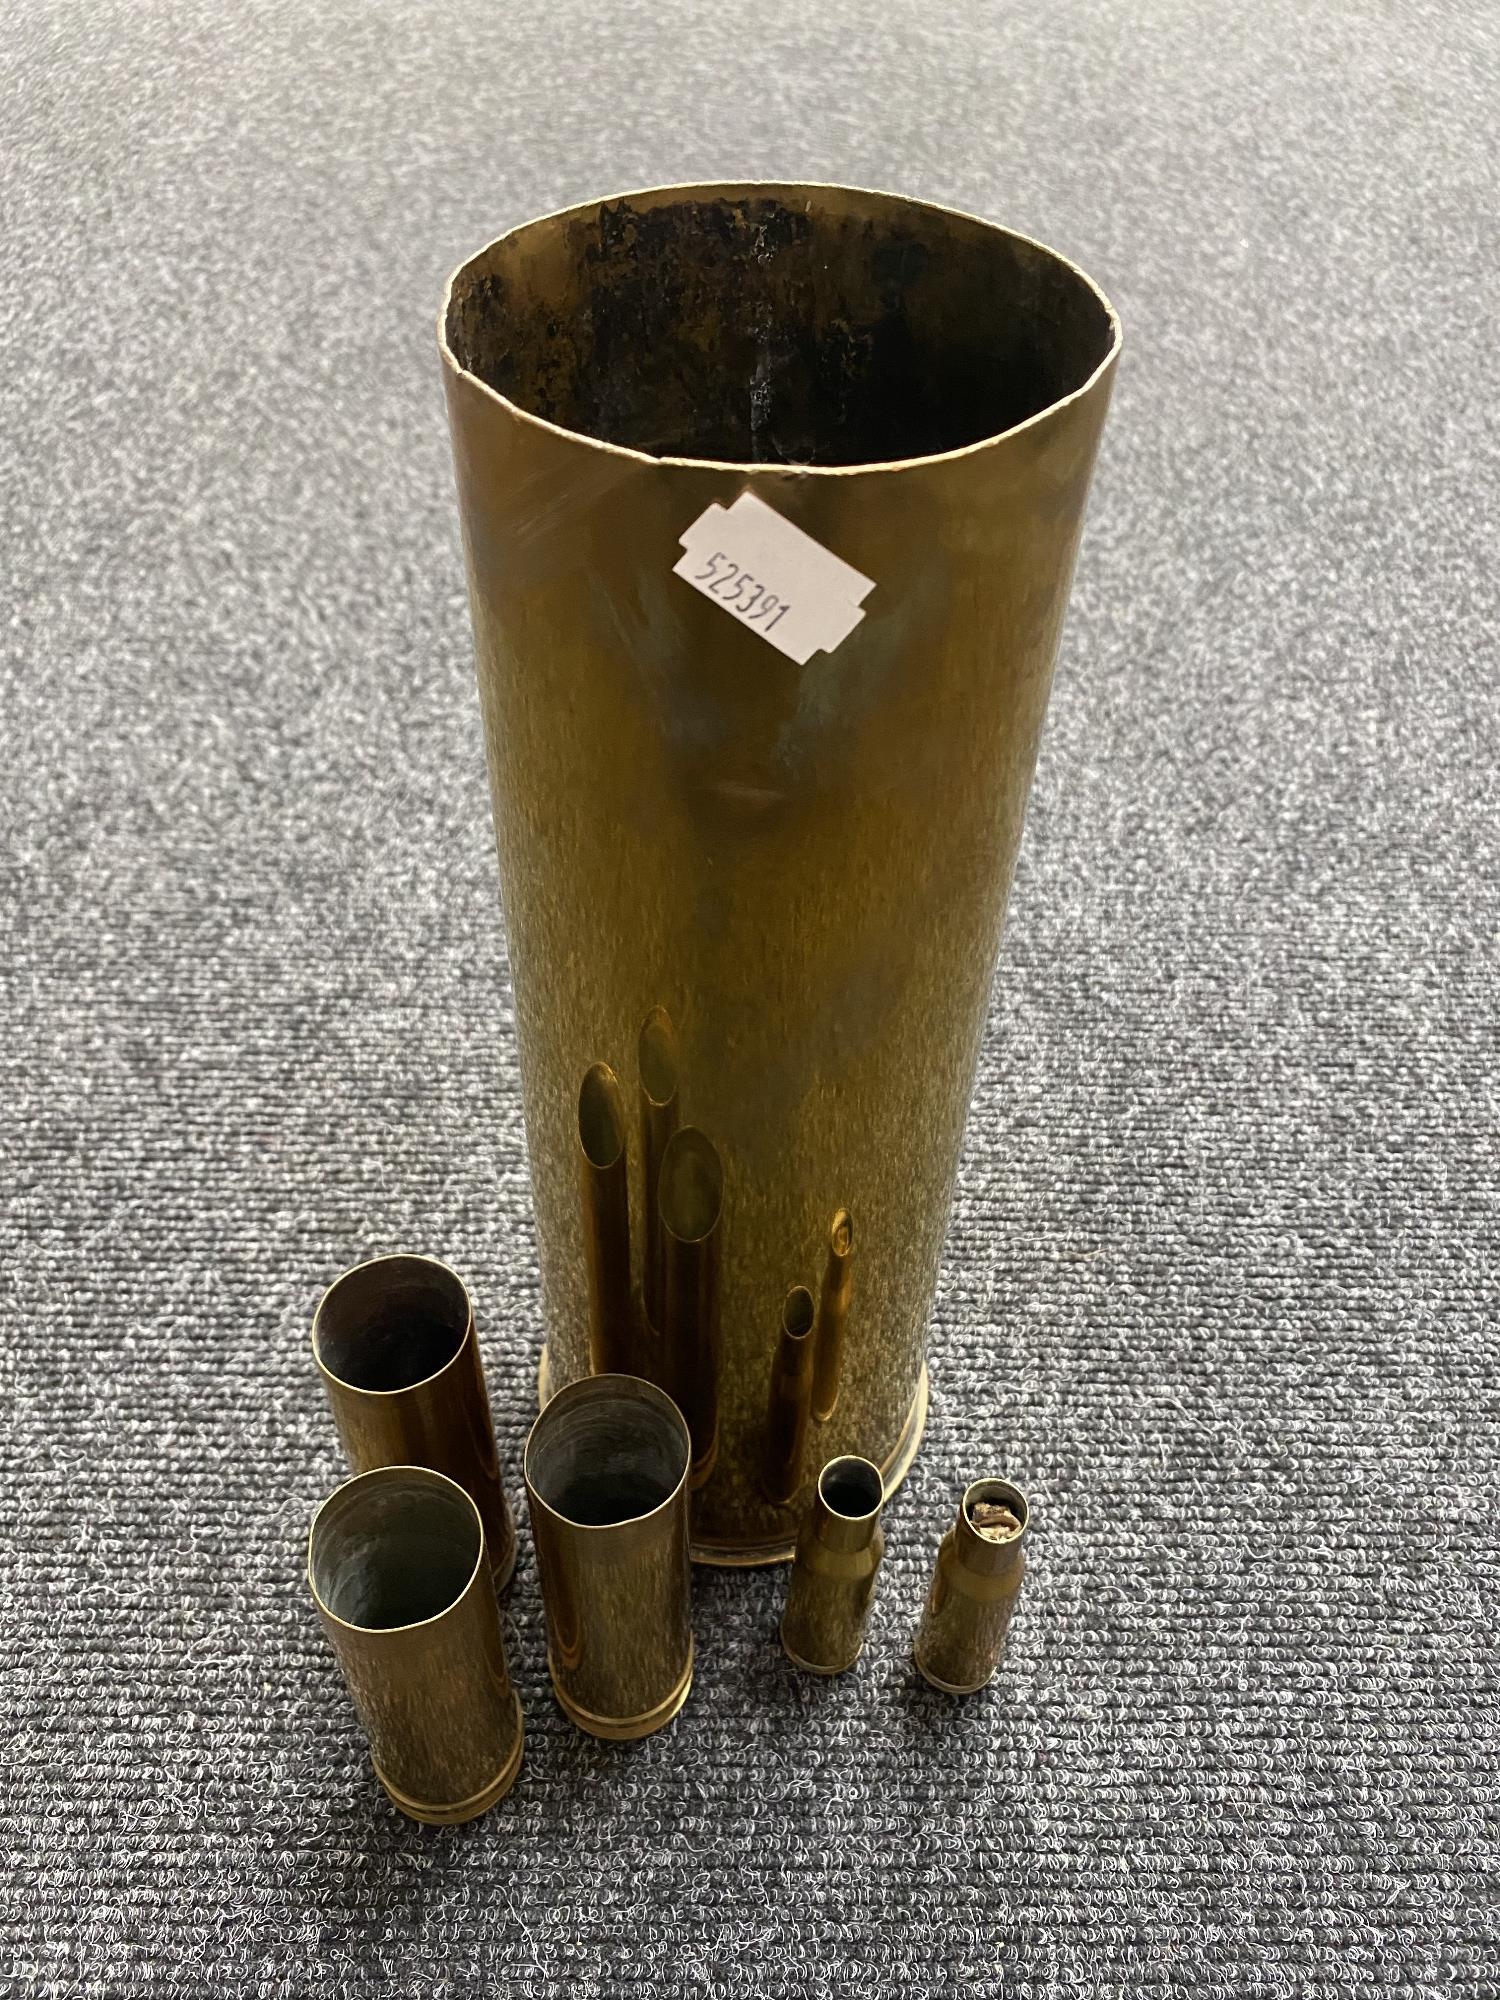 Six brass ammunition casings